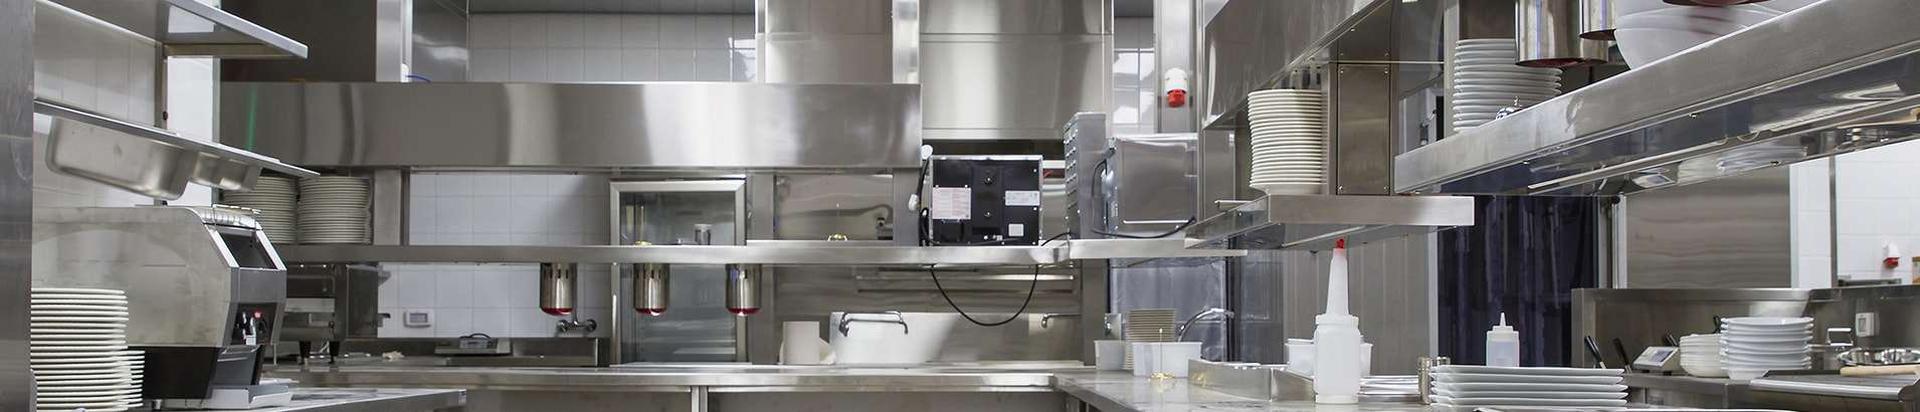 Haktek OÜ on restorani-, baari- ja suurköögiseadmete hooldusettevõte aastast 1997. Meie poolt remonditavate köögiseadmete valik on lai - alates väikestest kuni suurte seadmeteni.